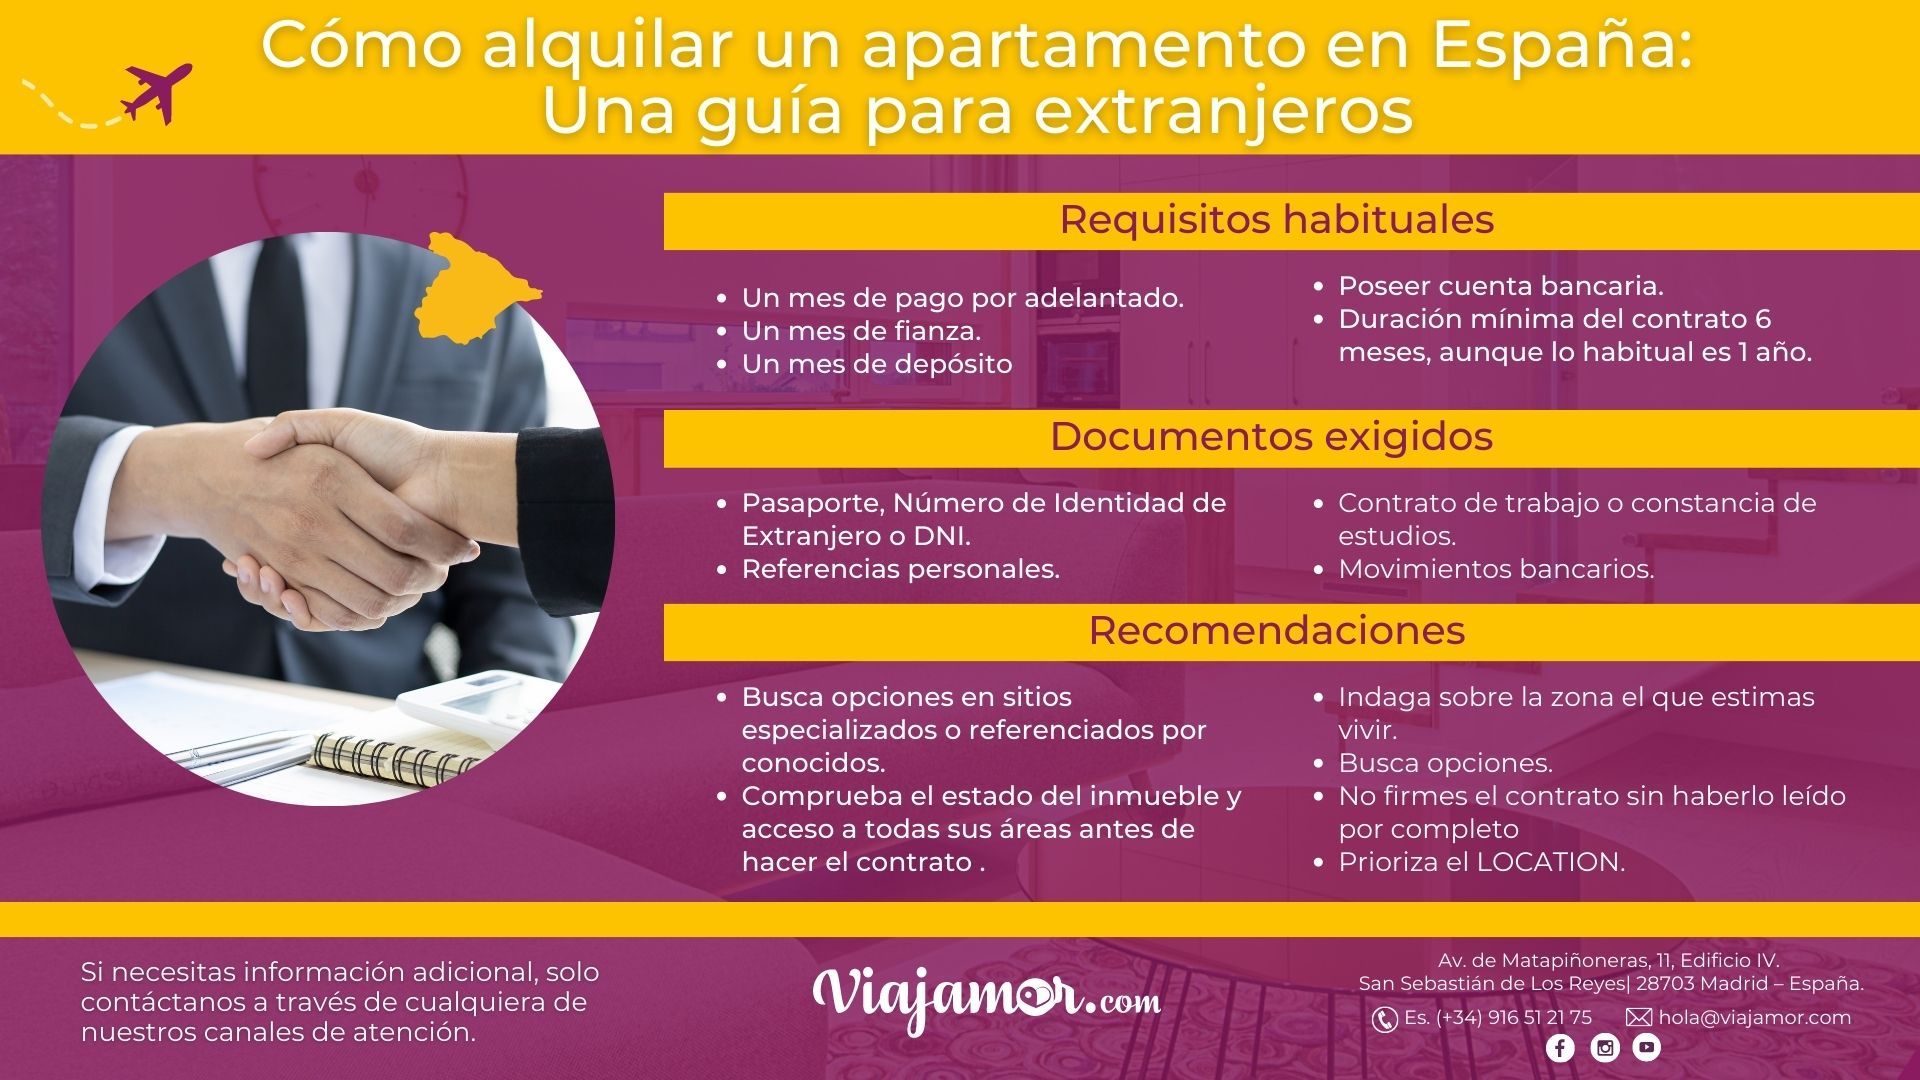 ¿Cómo alquilar un piso en España siendo extranjero?